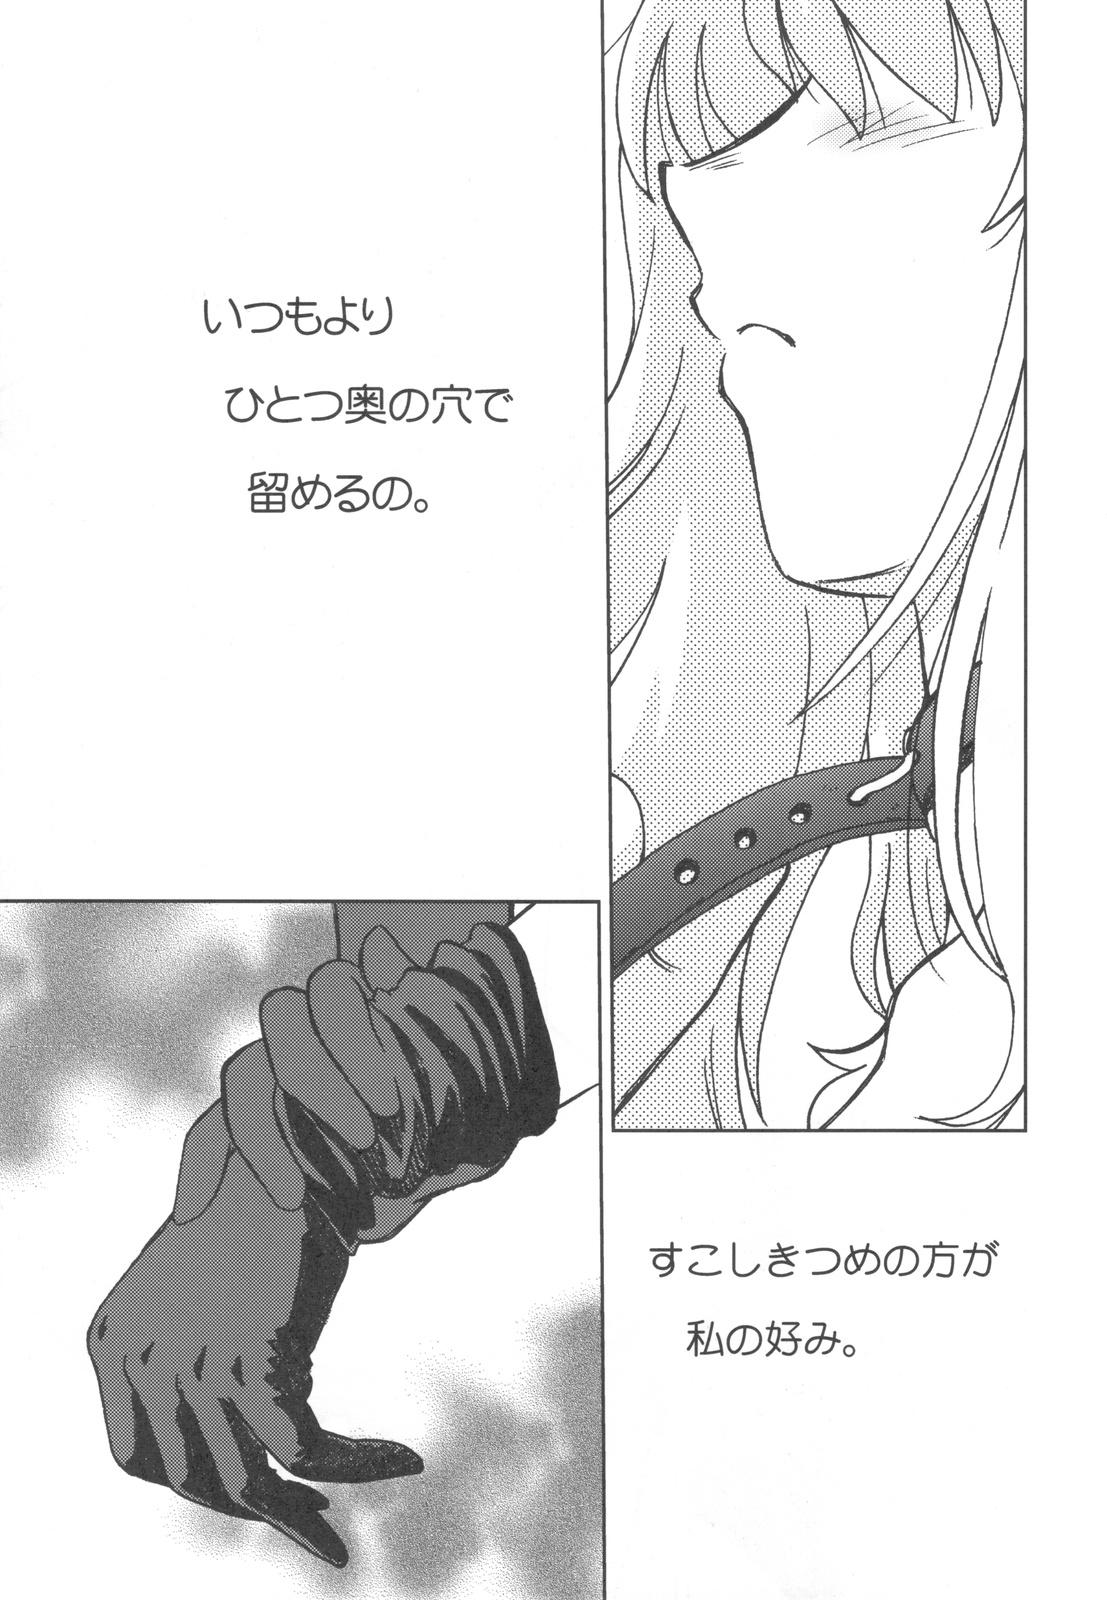 Hot Kishou Tenketsu 7 - Macross frontier Breast - Page 5